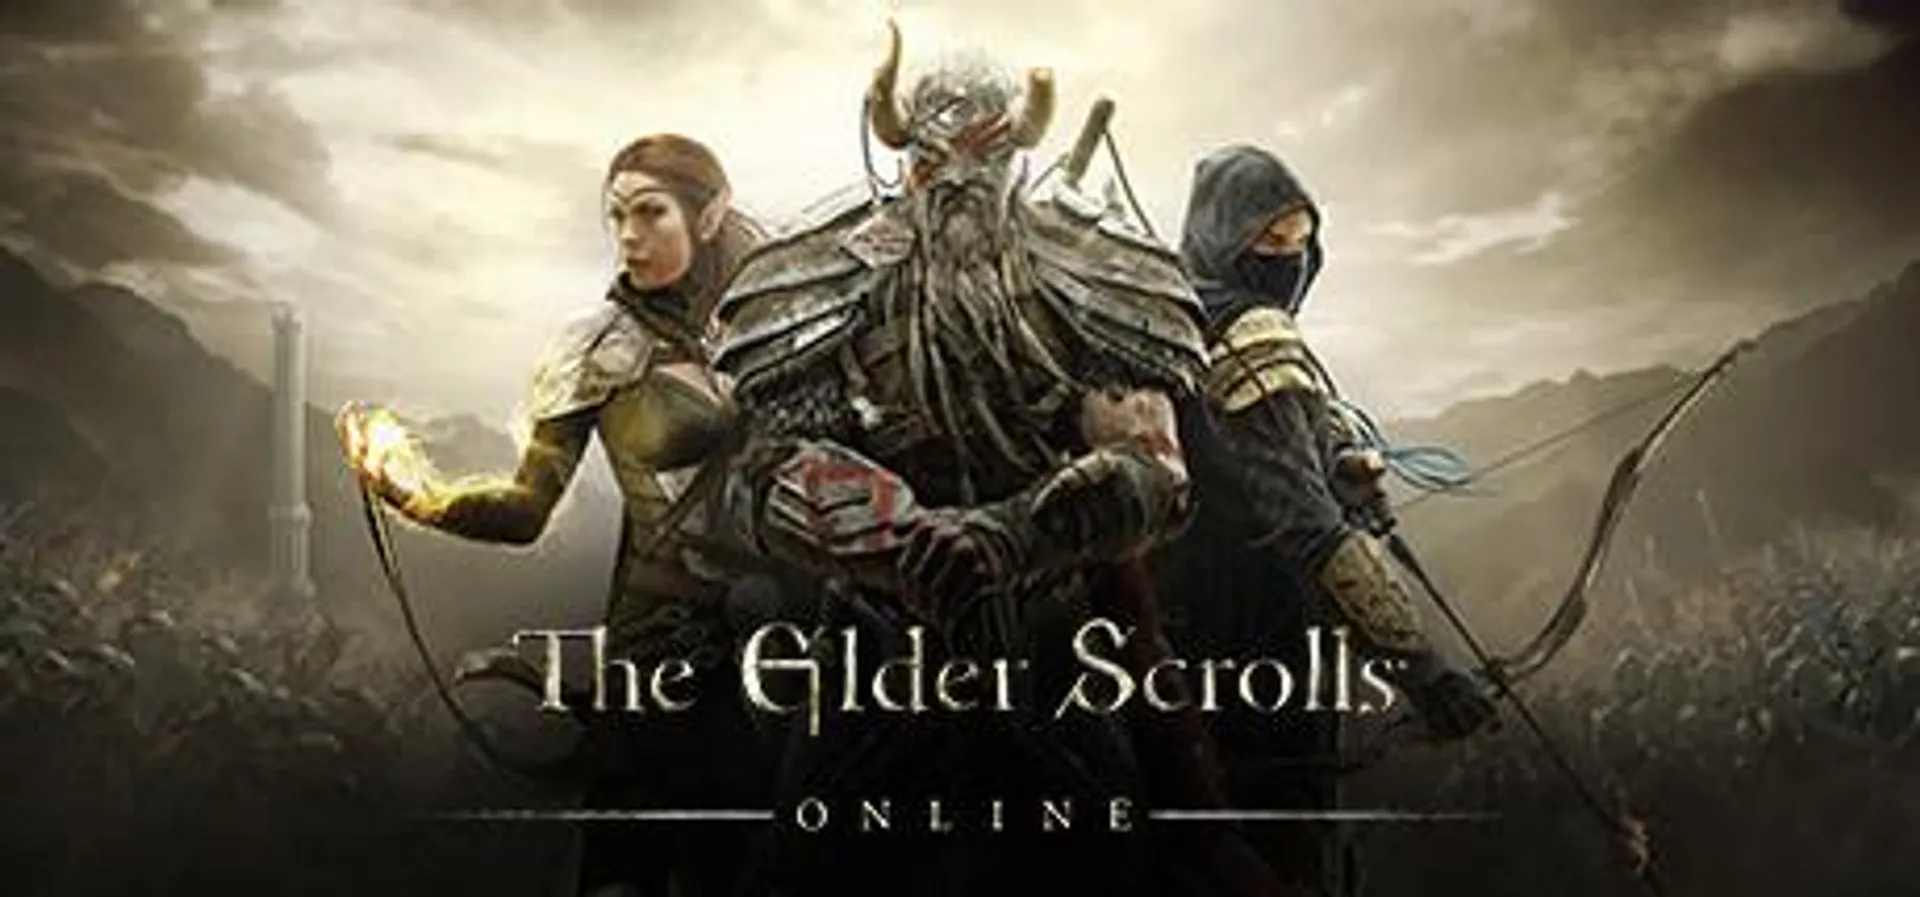 Save 70% on The Elder Scrolls® Online on Steam